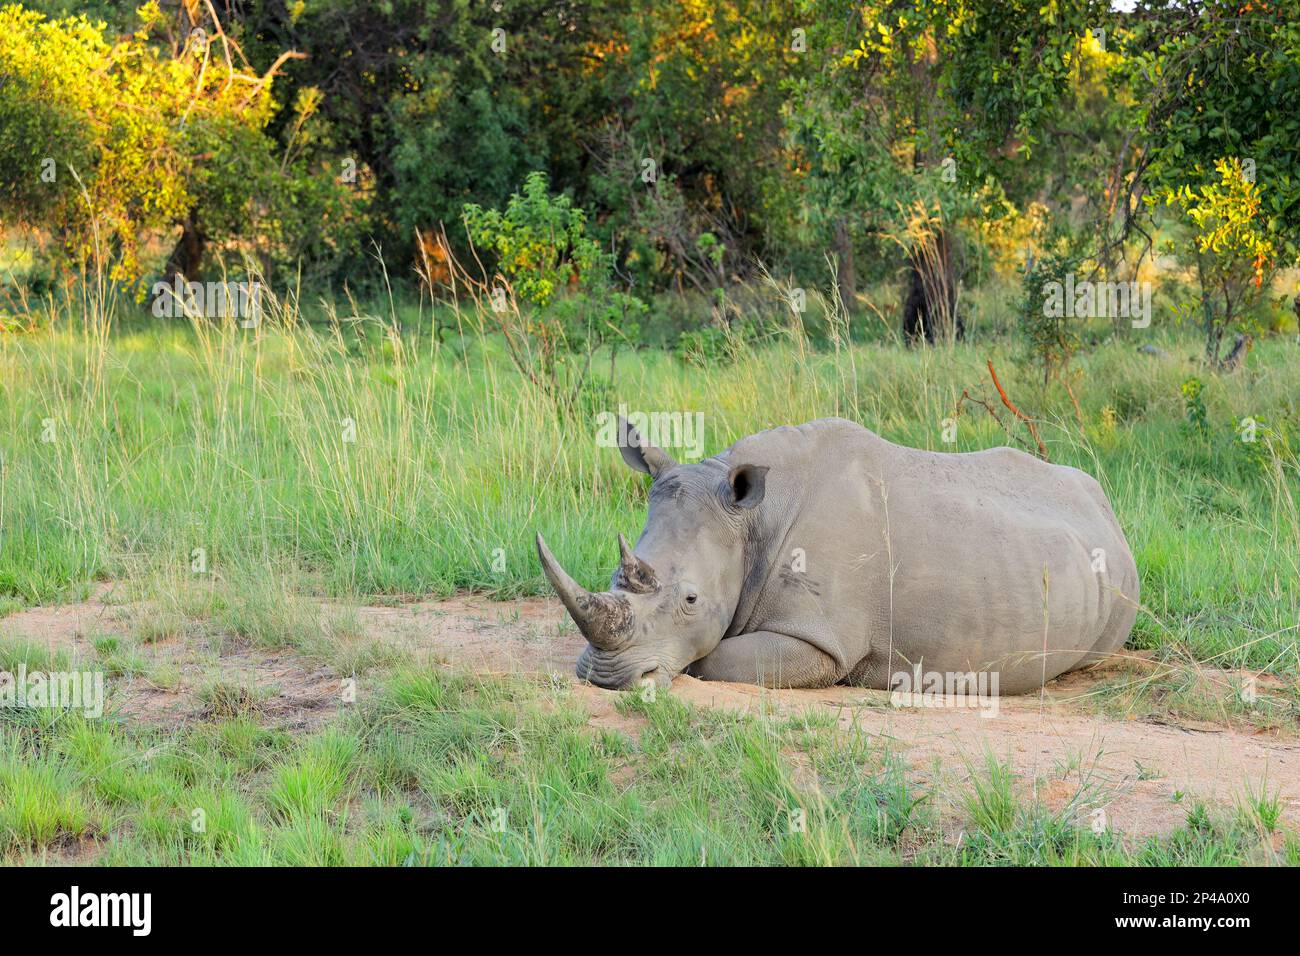 A white rhinoceros (Ceratotherium simum) resting in natural habitat, South Africa Stock Photo